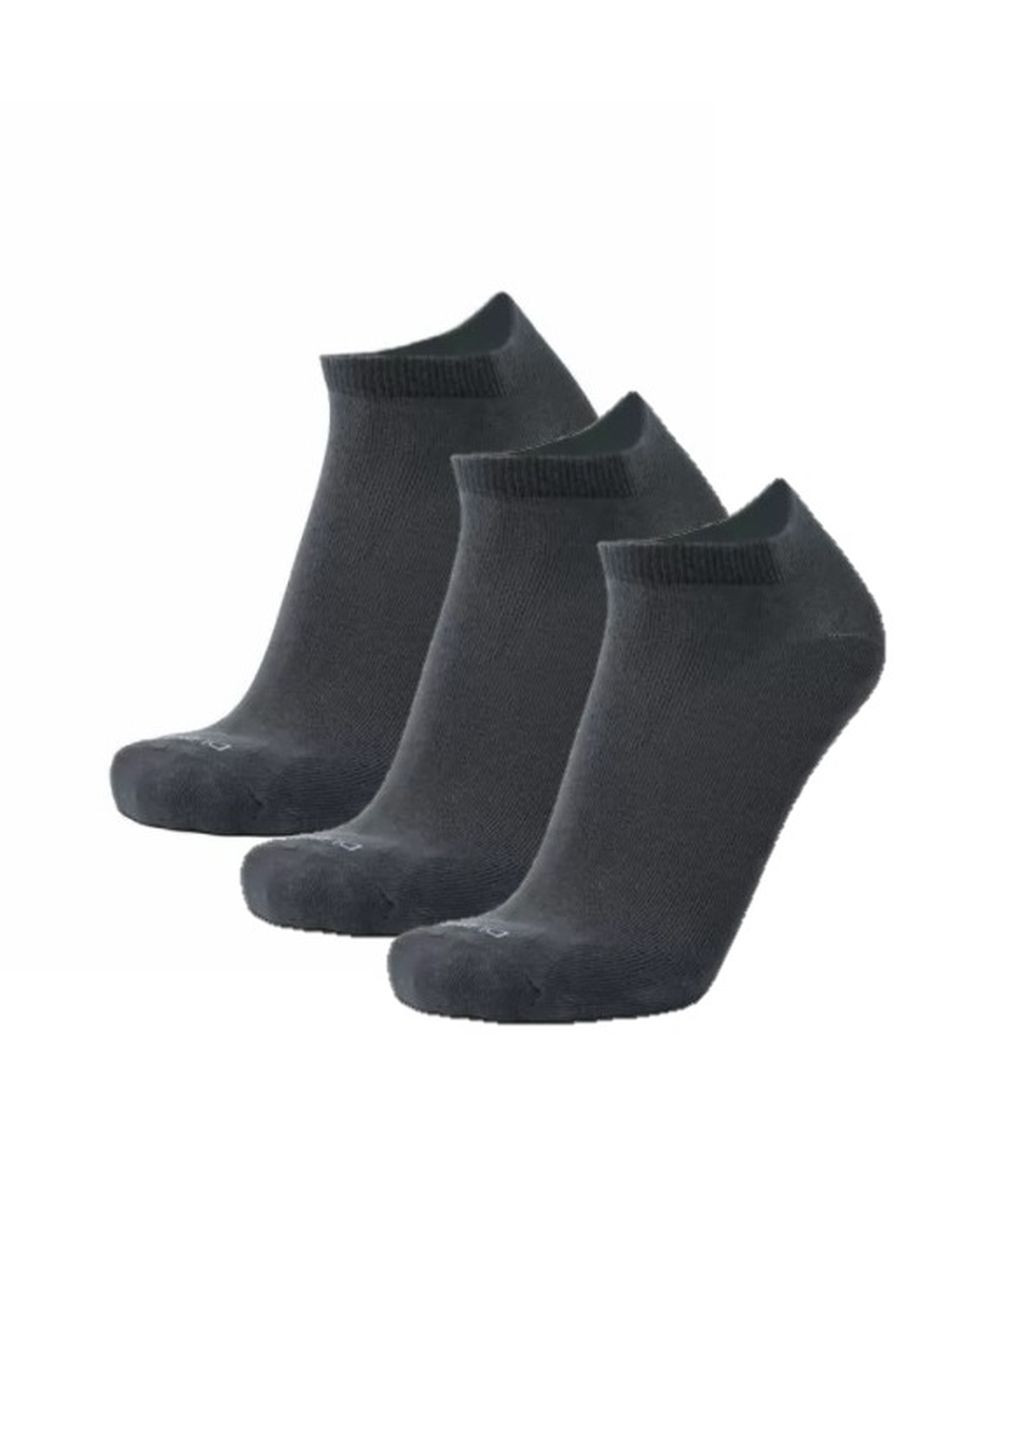 Набор (3шт) мужских носков Duna 7018 однотонные тёмно-серые повседневные